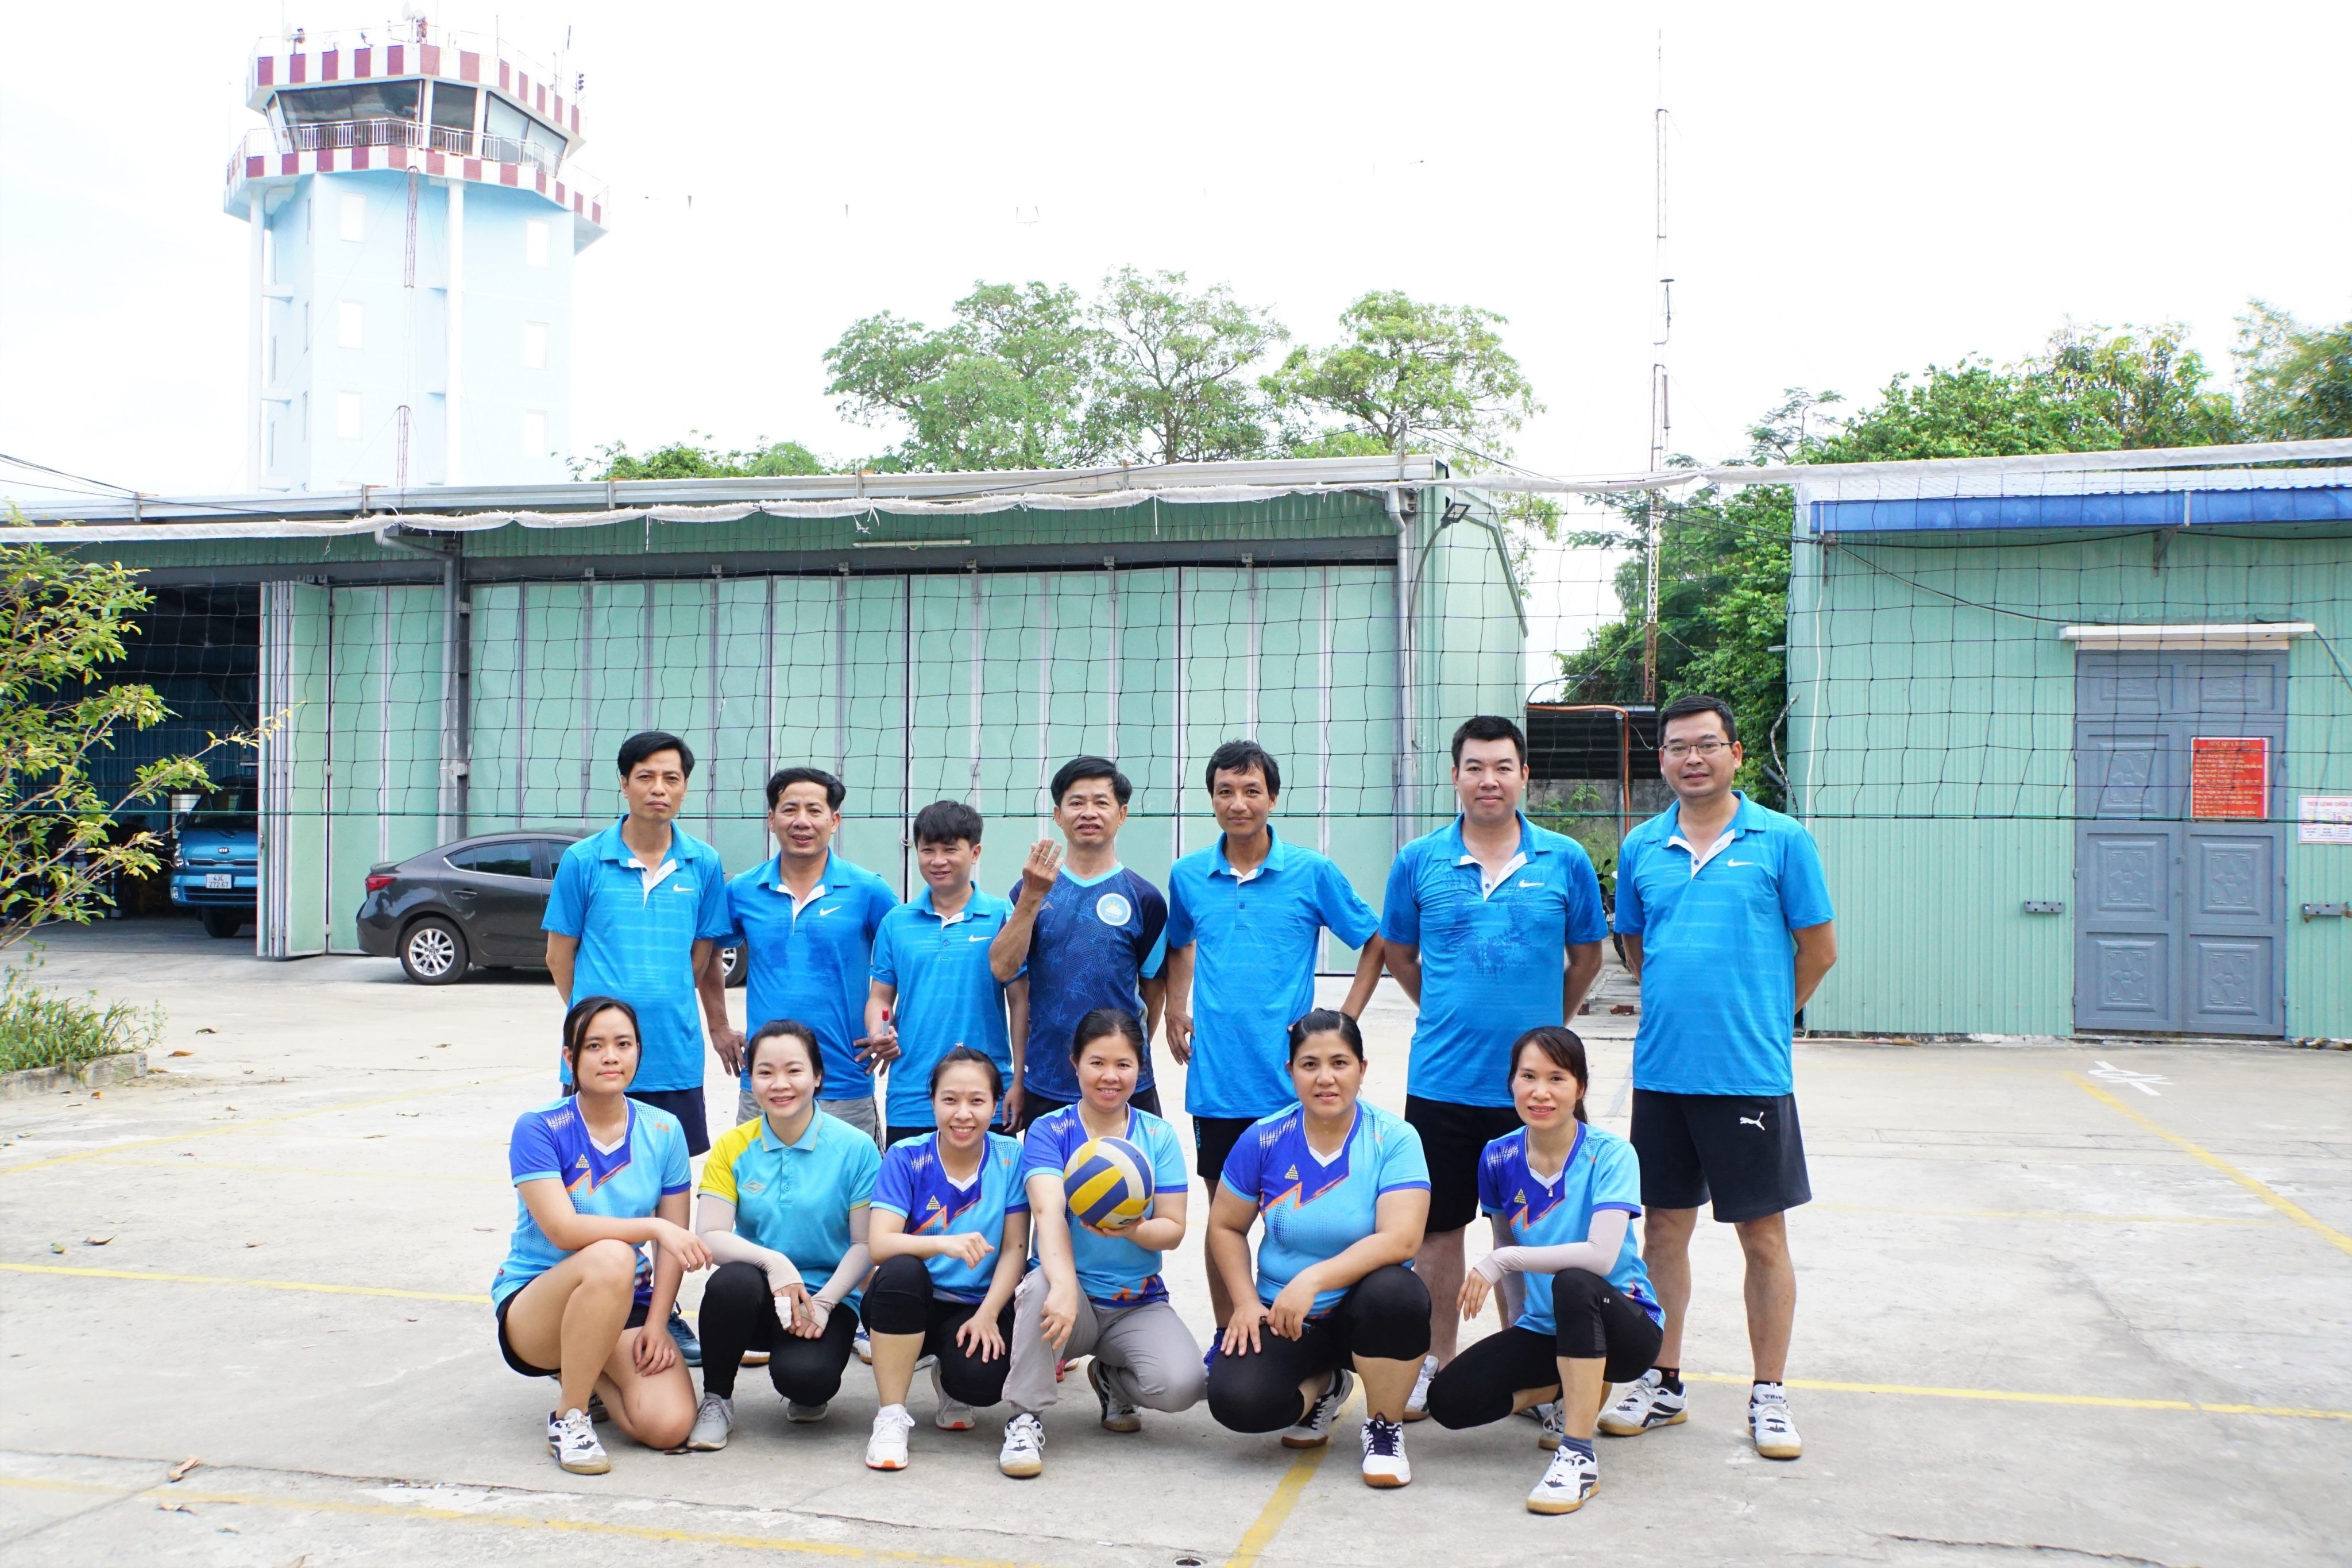 Chi đoàn TT.KTHK Đà Nẵng tổ chức hoạt động giao lưu thể thao chào mừng kỷ niệm 133 năm ngày sinh Chủ tịch Hồ Chí Minh